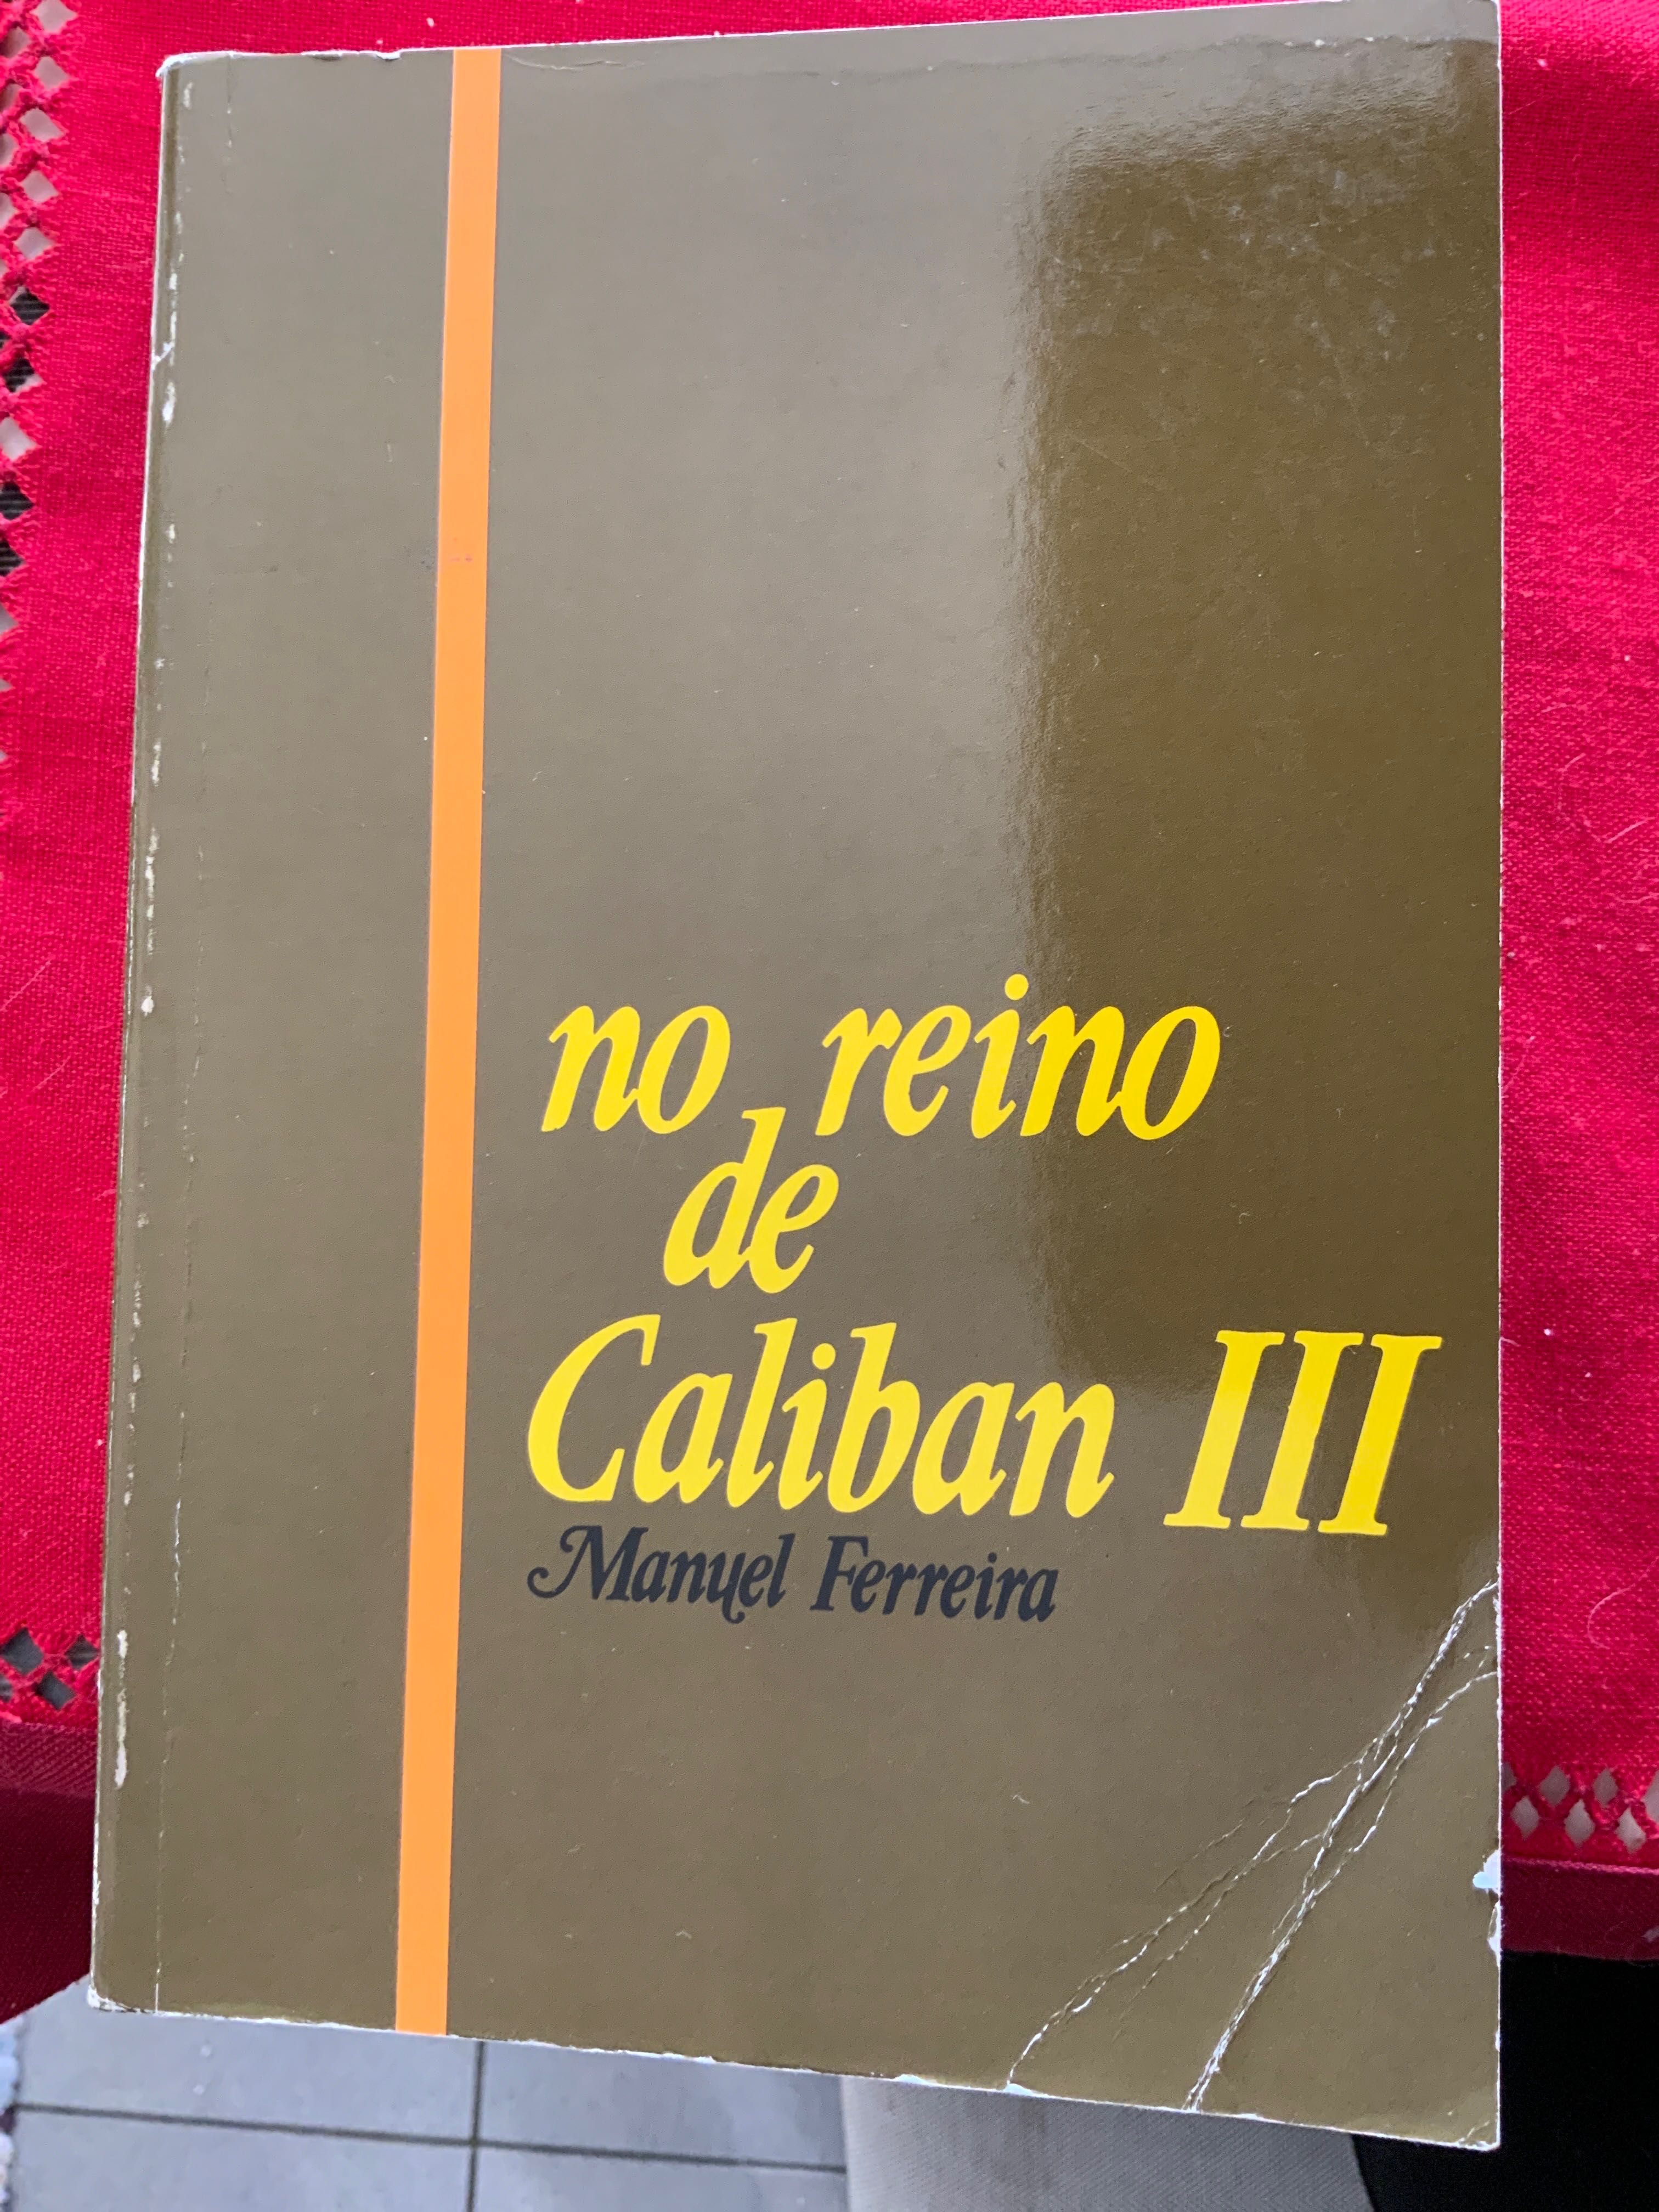 No reino de Caliban III Manuel Ferreira